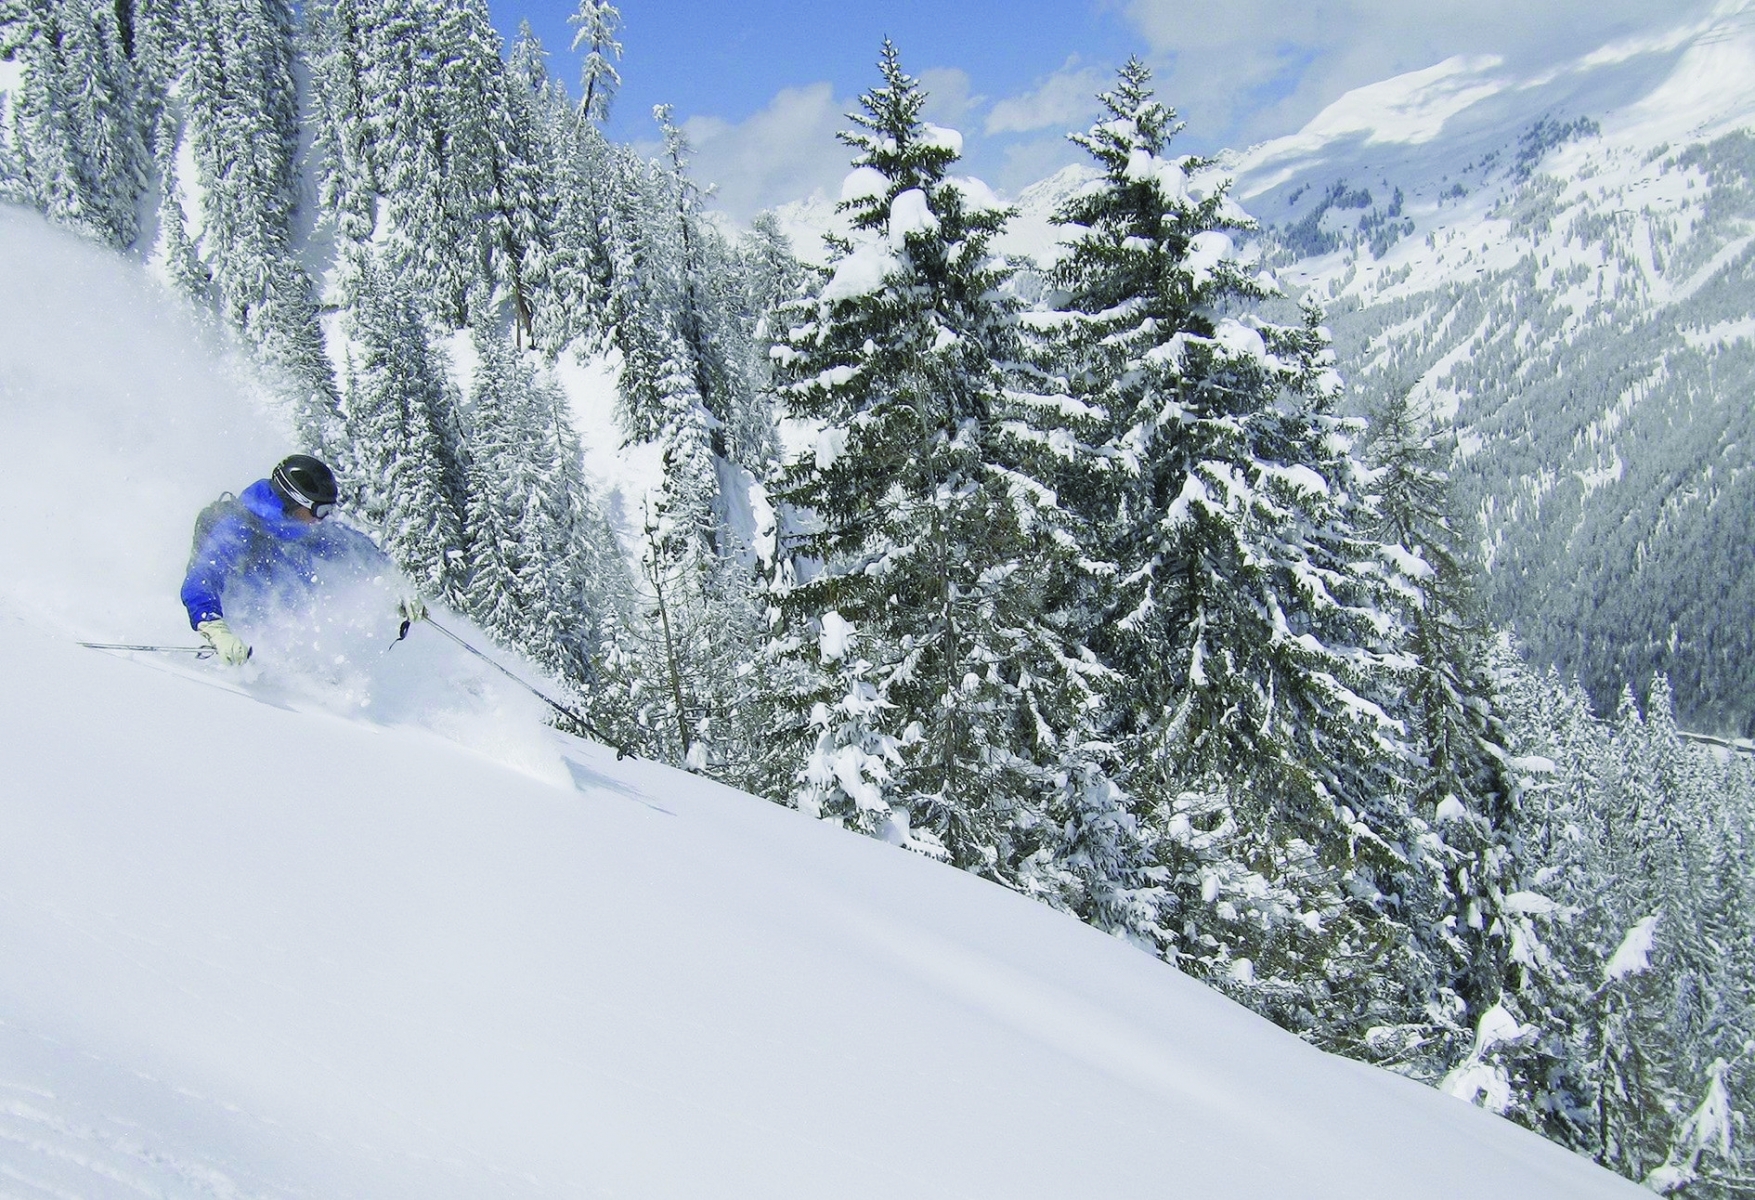 Skier hors des pistes balisés lorsque le danger d'avalanche est avéré peut se traduire par de fortes pénalités financières en cas d'accident.